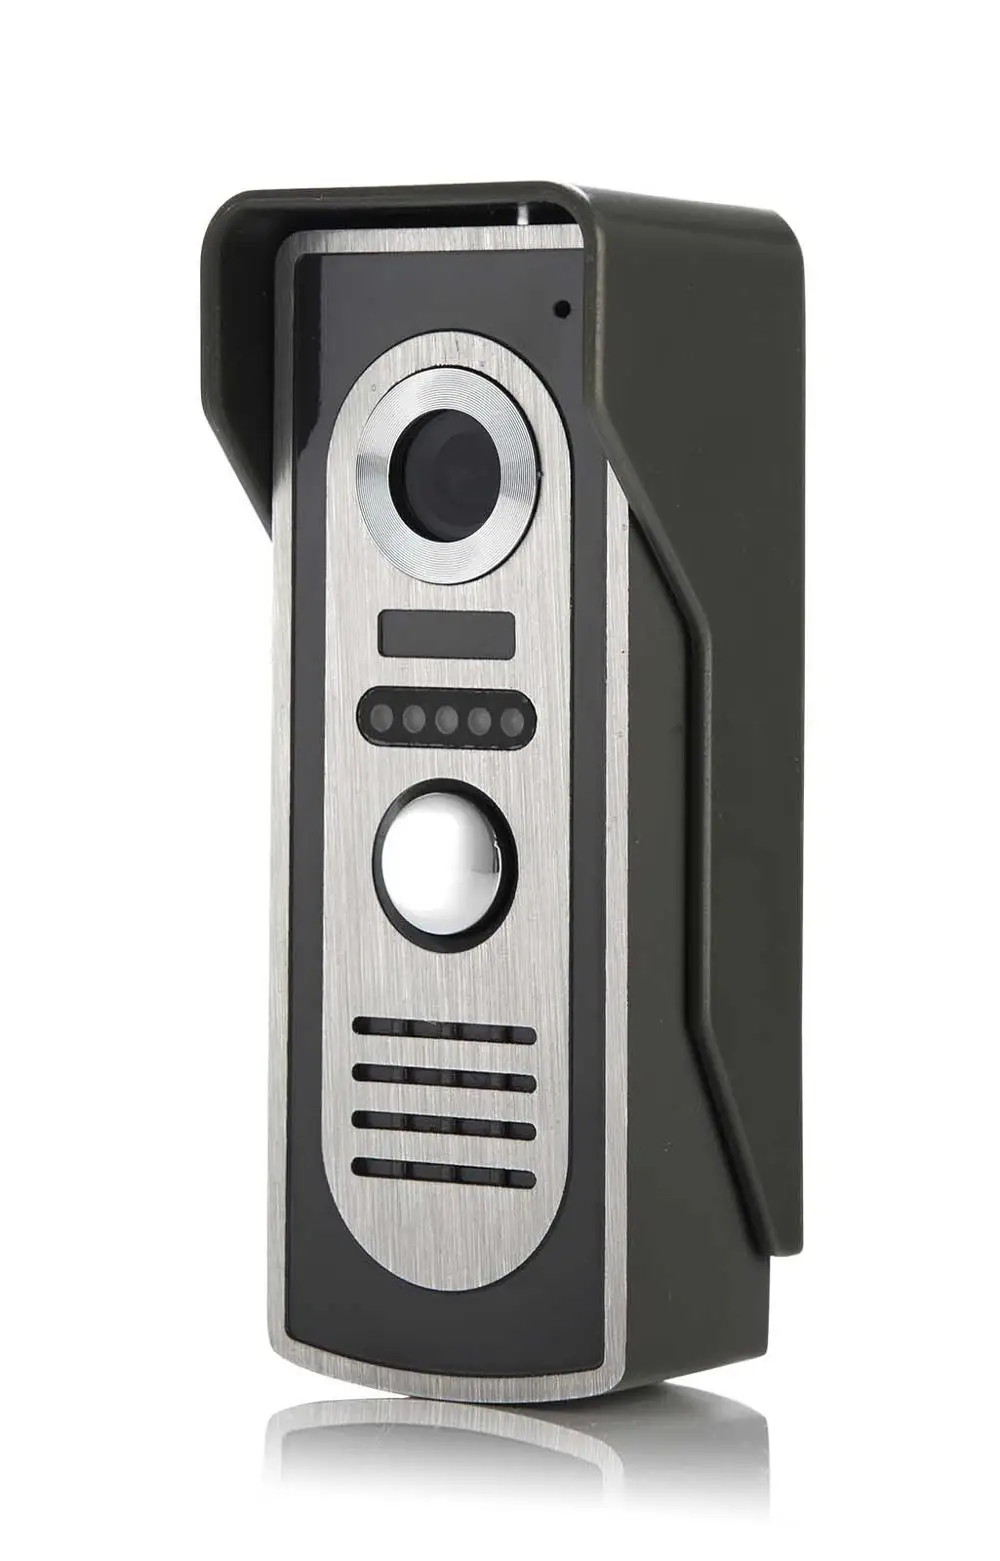 YobangSecurity домашняя Безопасность видеодомофон 4," дюймовый монитор видео дверной звонок Домофон камера монитор система квартира - Цвет: M2